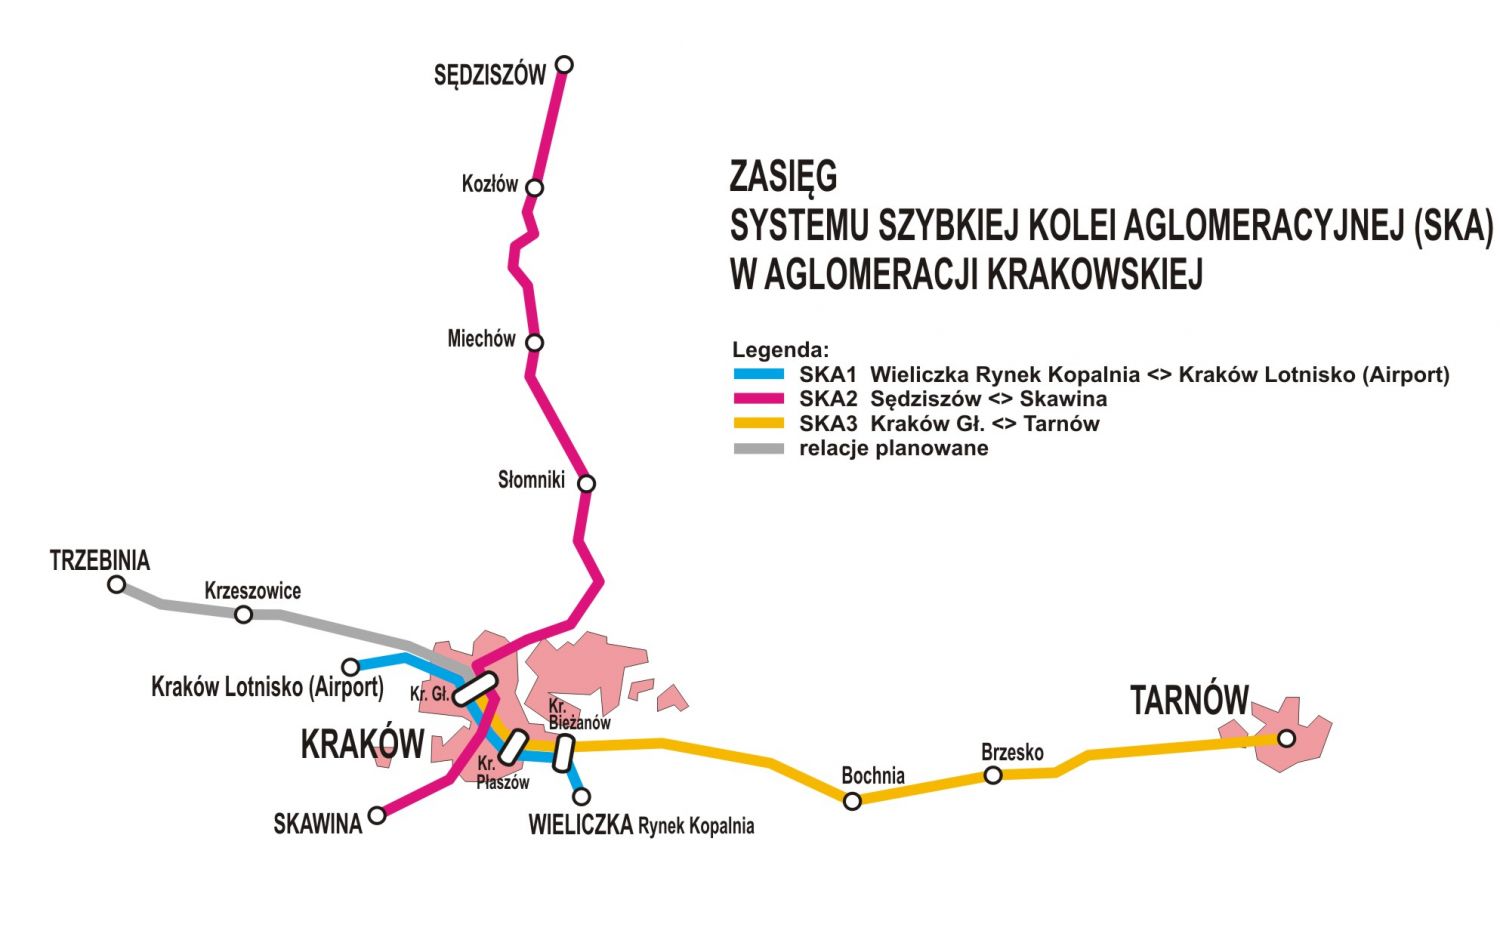 Schemat przedstawia linie Szybkiej Kolei Aglomeracyjnej w aglomeracji krakowskiej